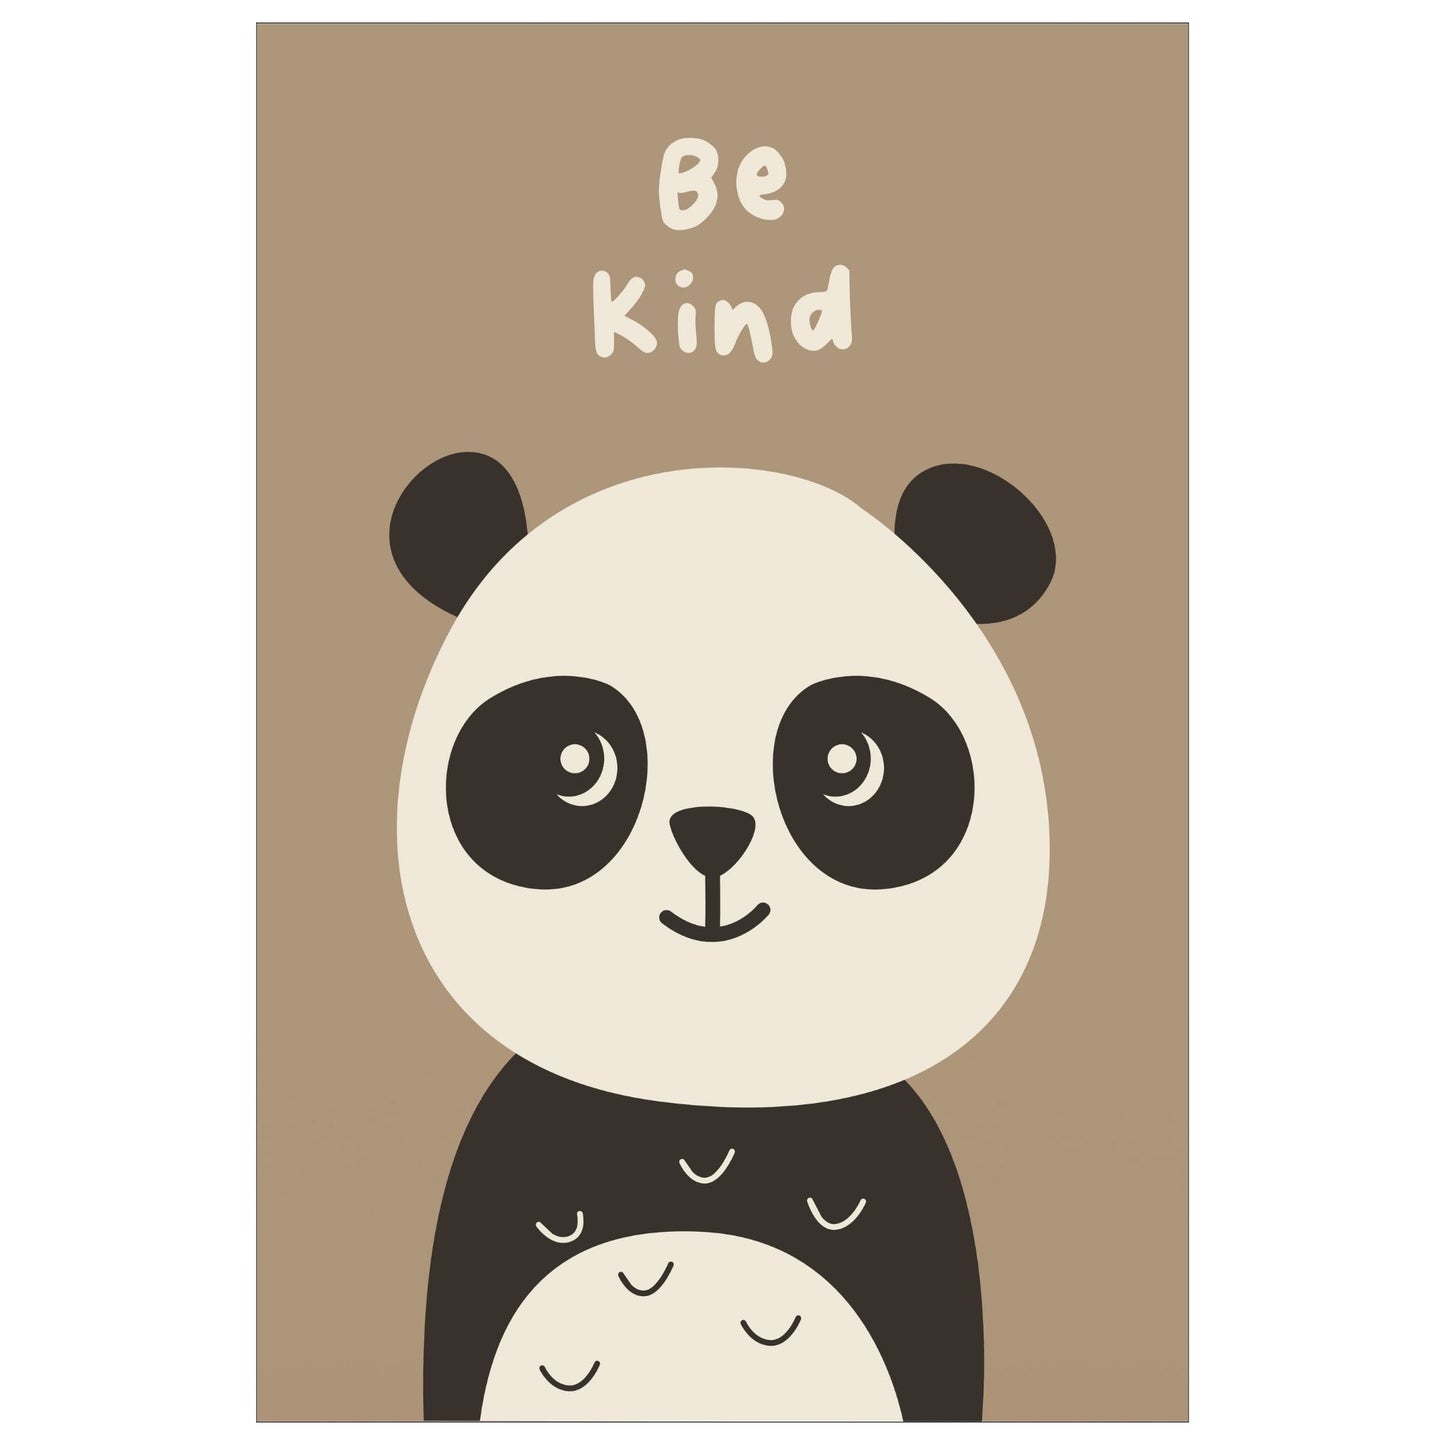 Cartoon Animal. Grafisk plakat for barnerommet. Beige panda på lys brun bakgrunn. Tekst "Be kind".